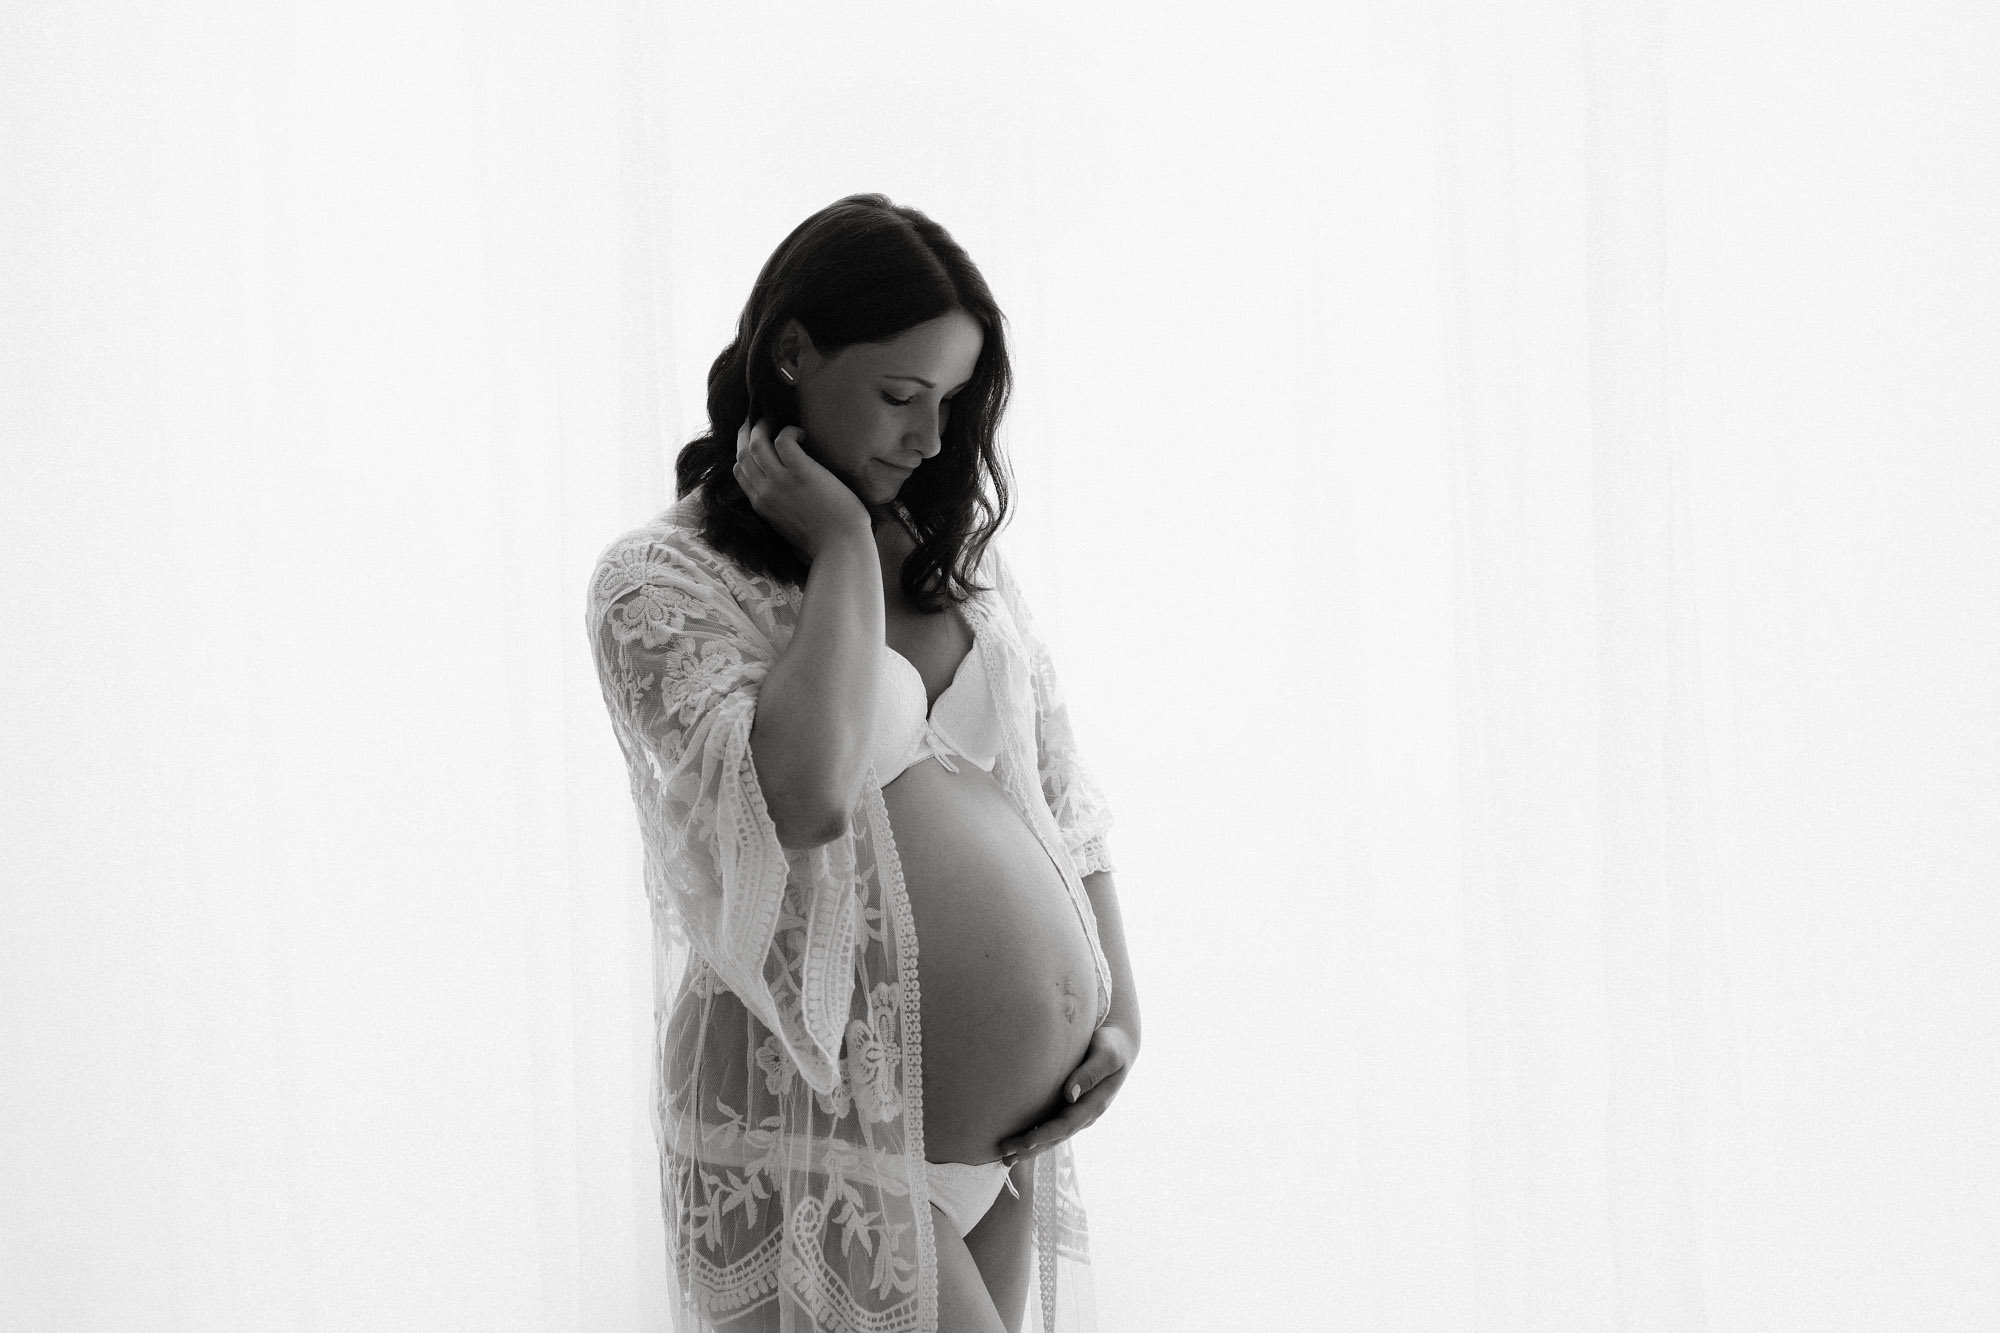 schwangerschaftsfotos leipzig babybauch fotoshooting halle chemnitz julia oehme